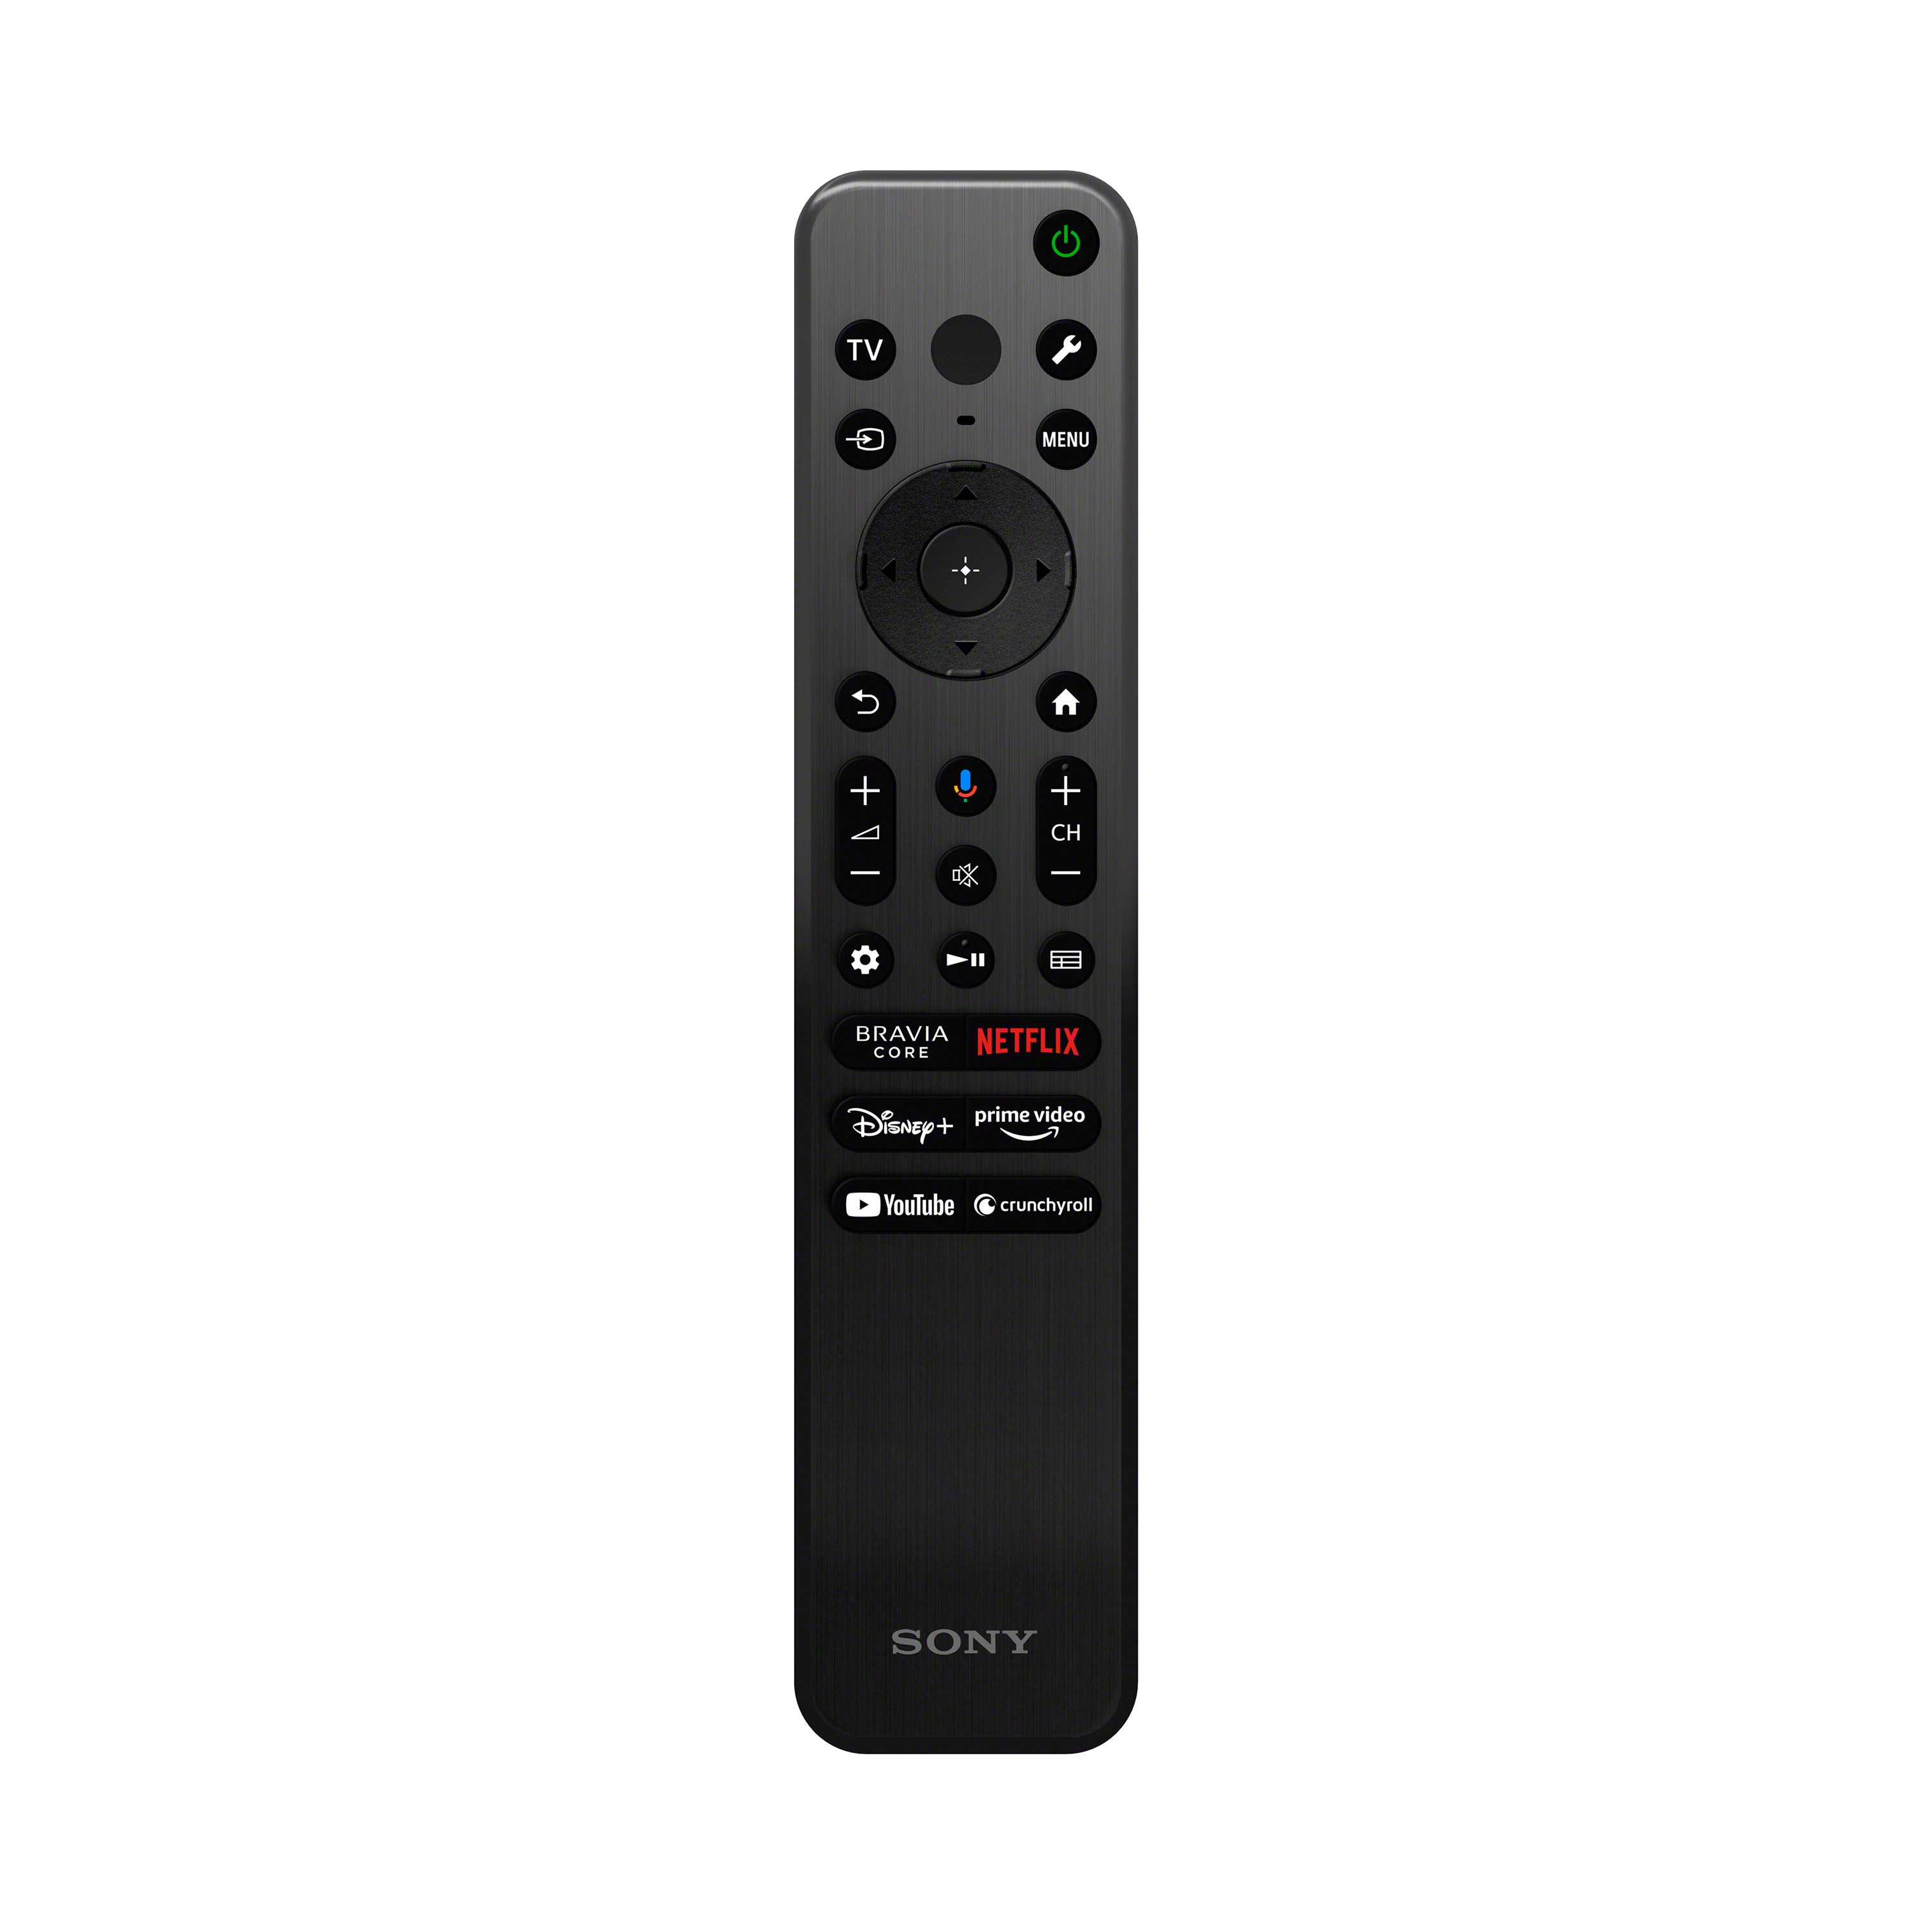 X93L BRAVIA XR | Mini LED | 4K HDR TV | Smart TV (Google TV)